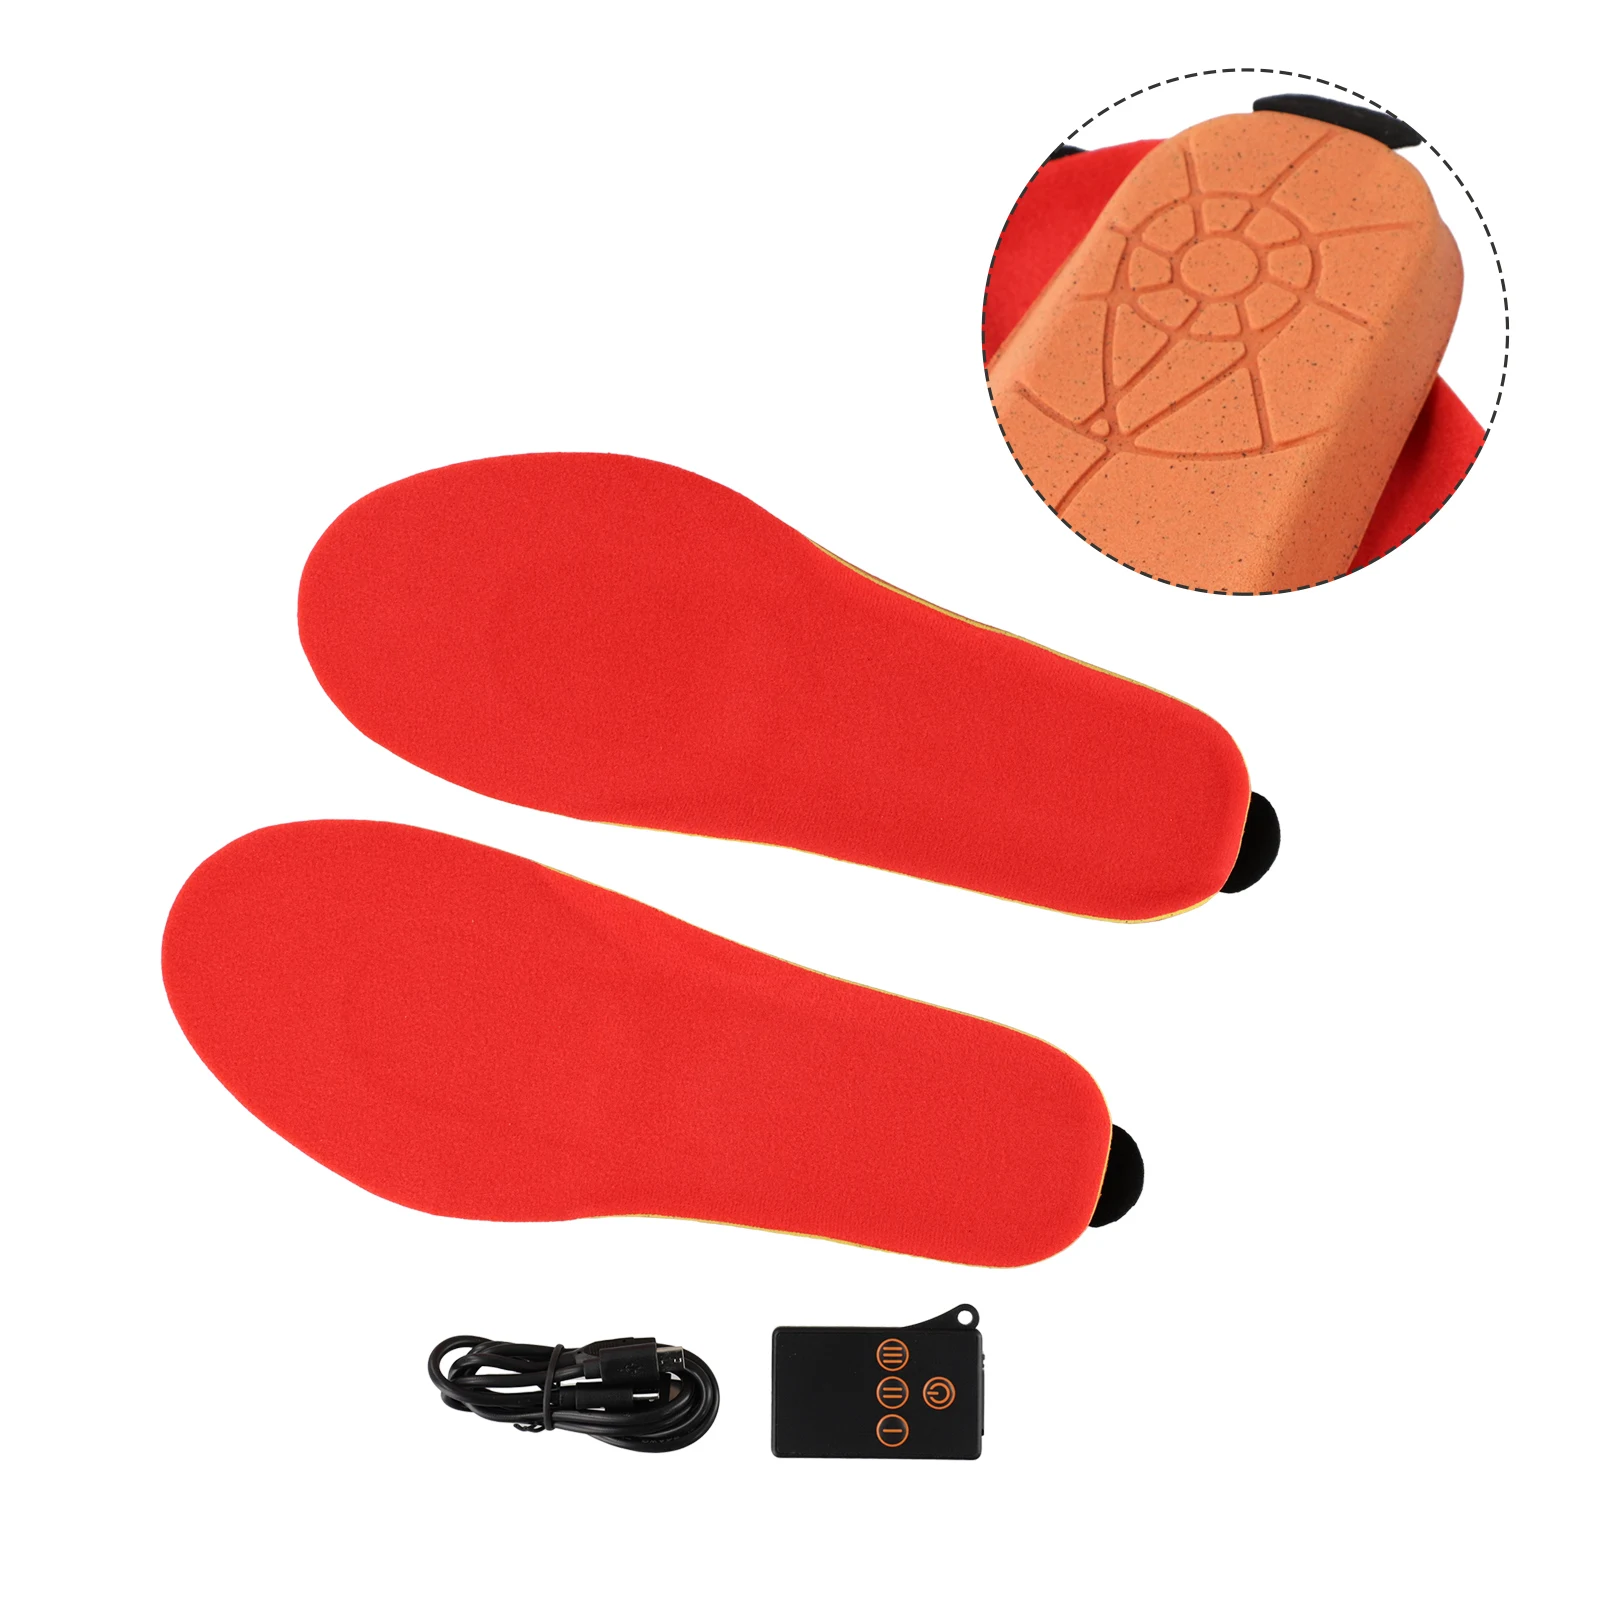 USB-стельки с подогревом для обуви Беспроводное управление Высокая эффективность нагрева Комфортное и дышащее зимнее тепло для ног Изображение 0